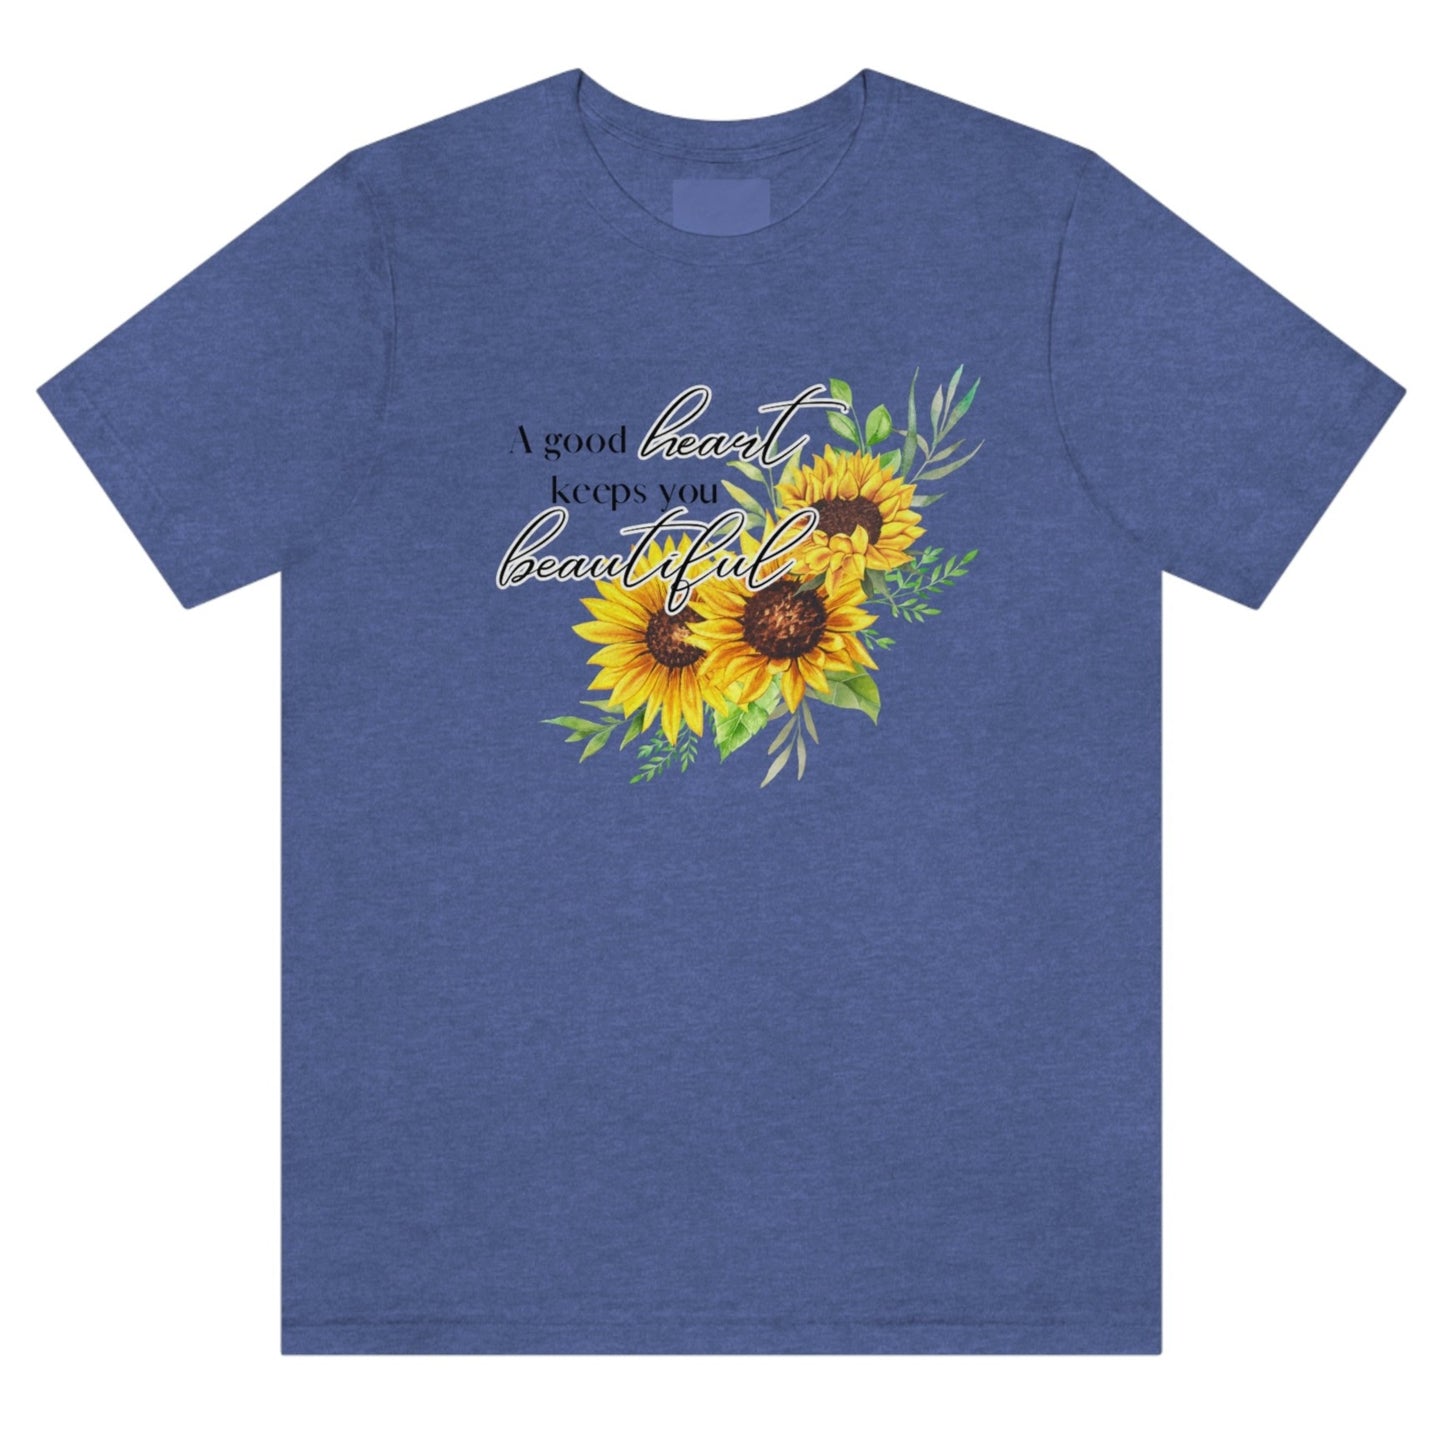 a-good-heart-keeps-you-beautiful-heather-true-navy-t-shirt-womens-sunflower